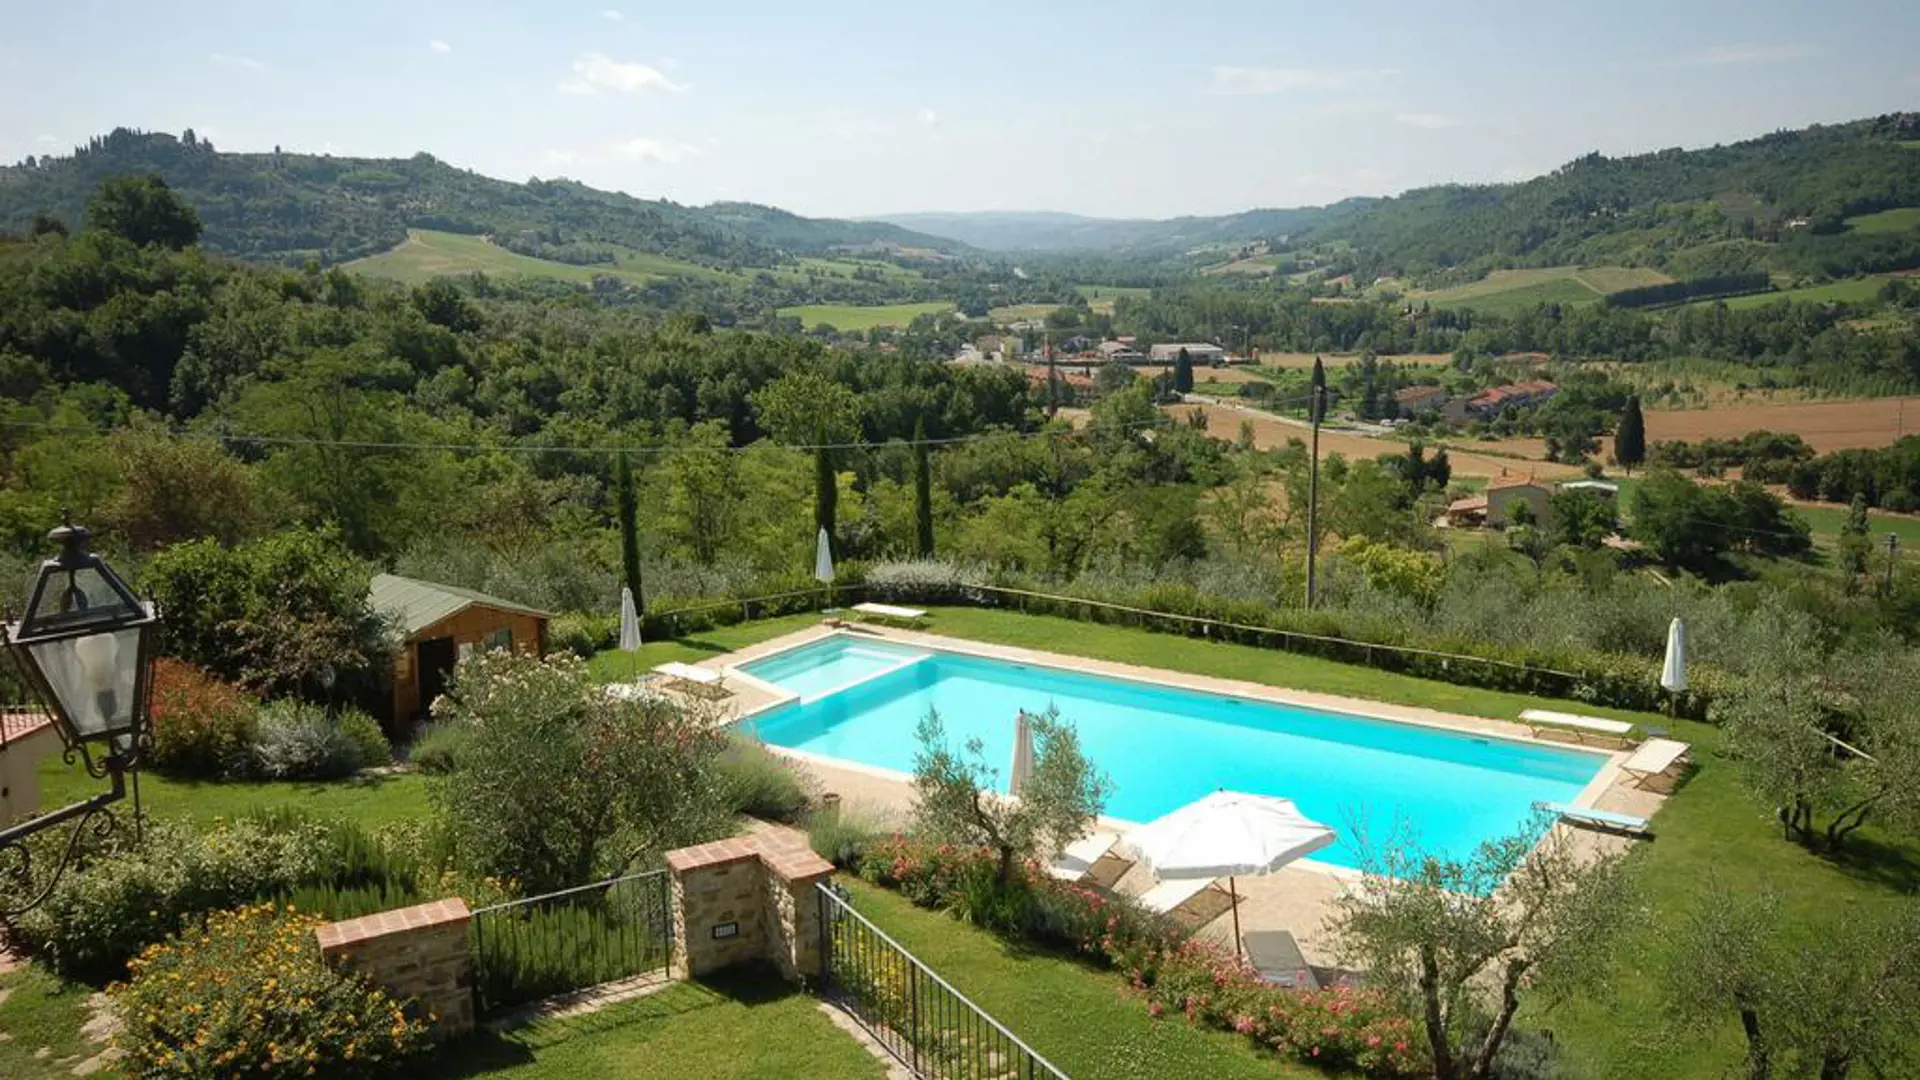 Ditt hotell i Toscana har det vakreste bassenget med utsikt.